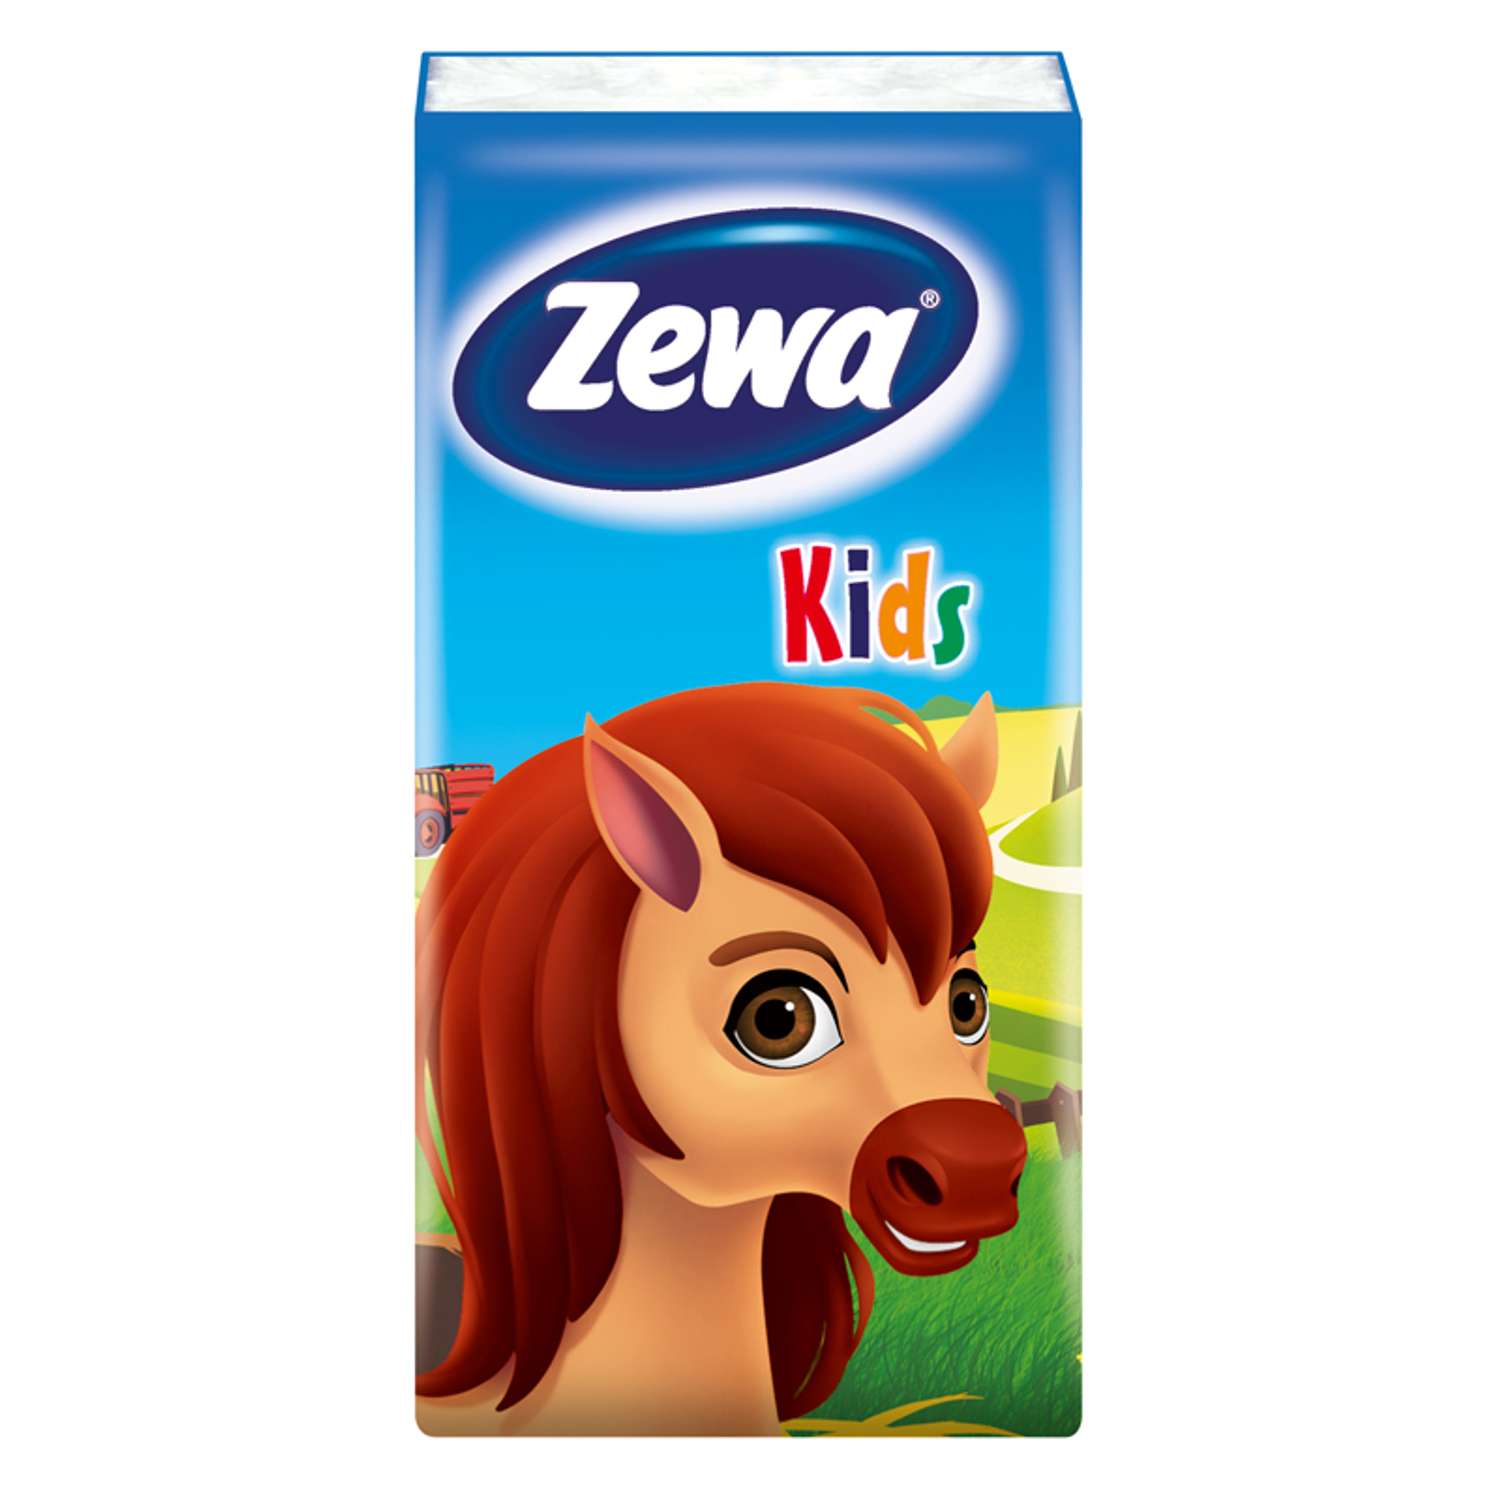 Платки носовые Zewa Kids 3 слоя 10шт в ассортименте 51122 - фото 2